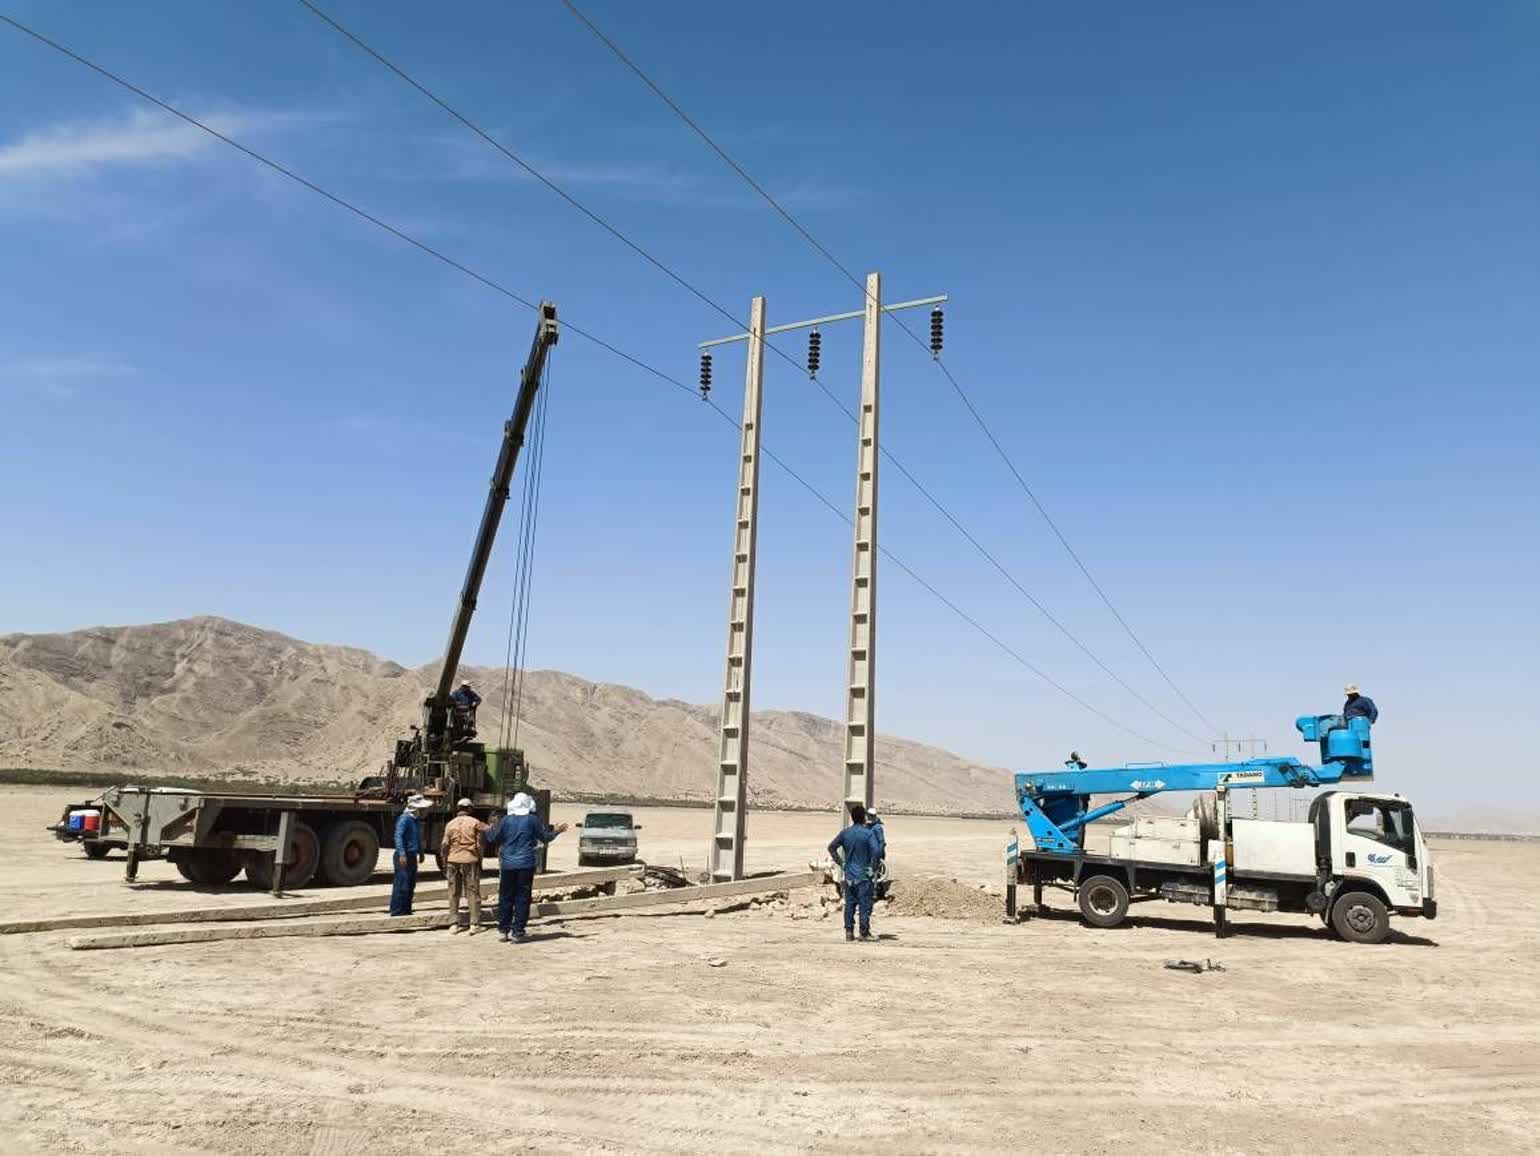 موفقیت شرکت برق منطقه ای فارس با رفع عیب خطوط برق رسانی گراش – فداغ – خنج و تامین برق شهرستان های جنوبی فارس